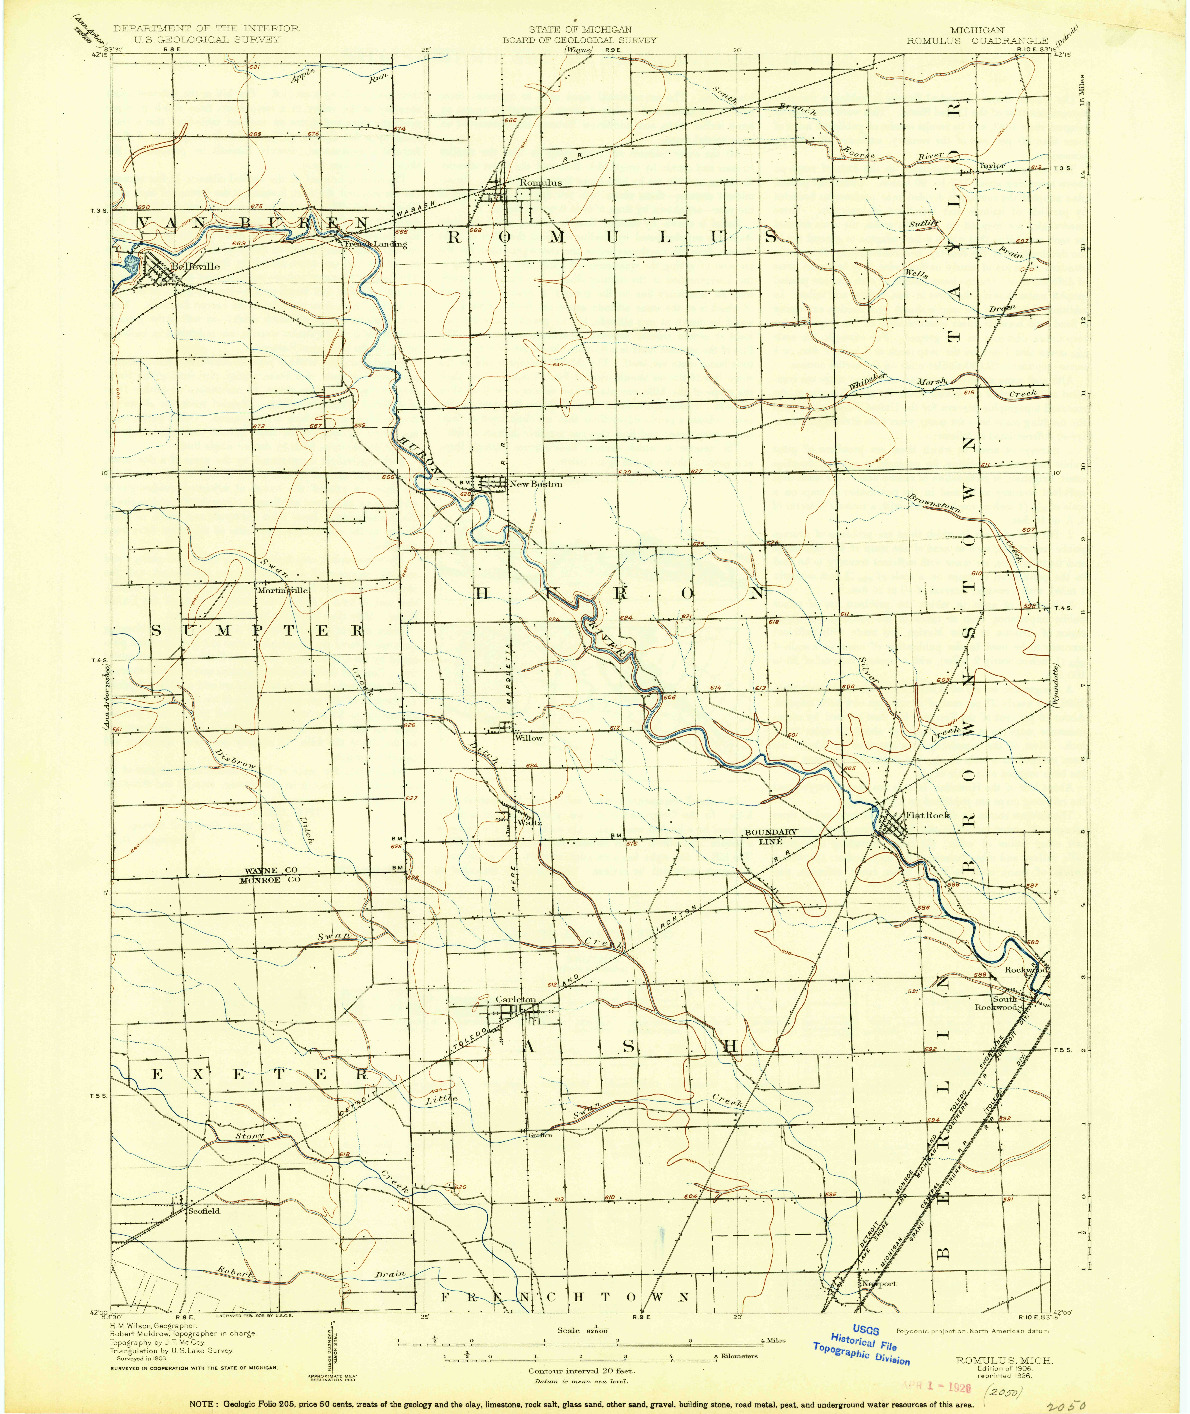 USGS 1:62500-SCALE QUADRANGLE FOR ROMULUS, MI 1906